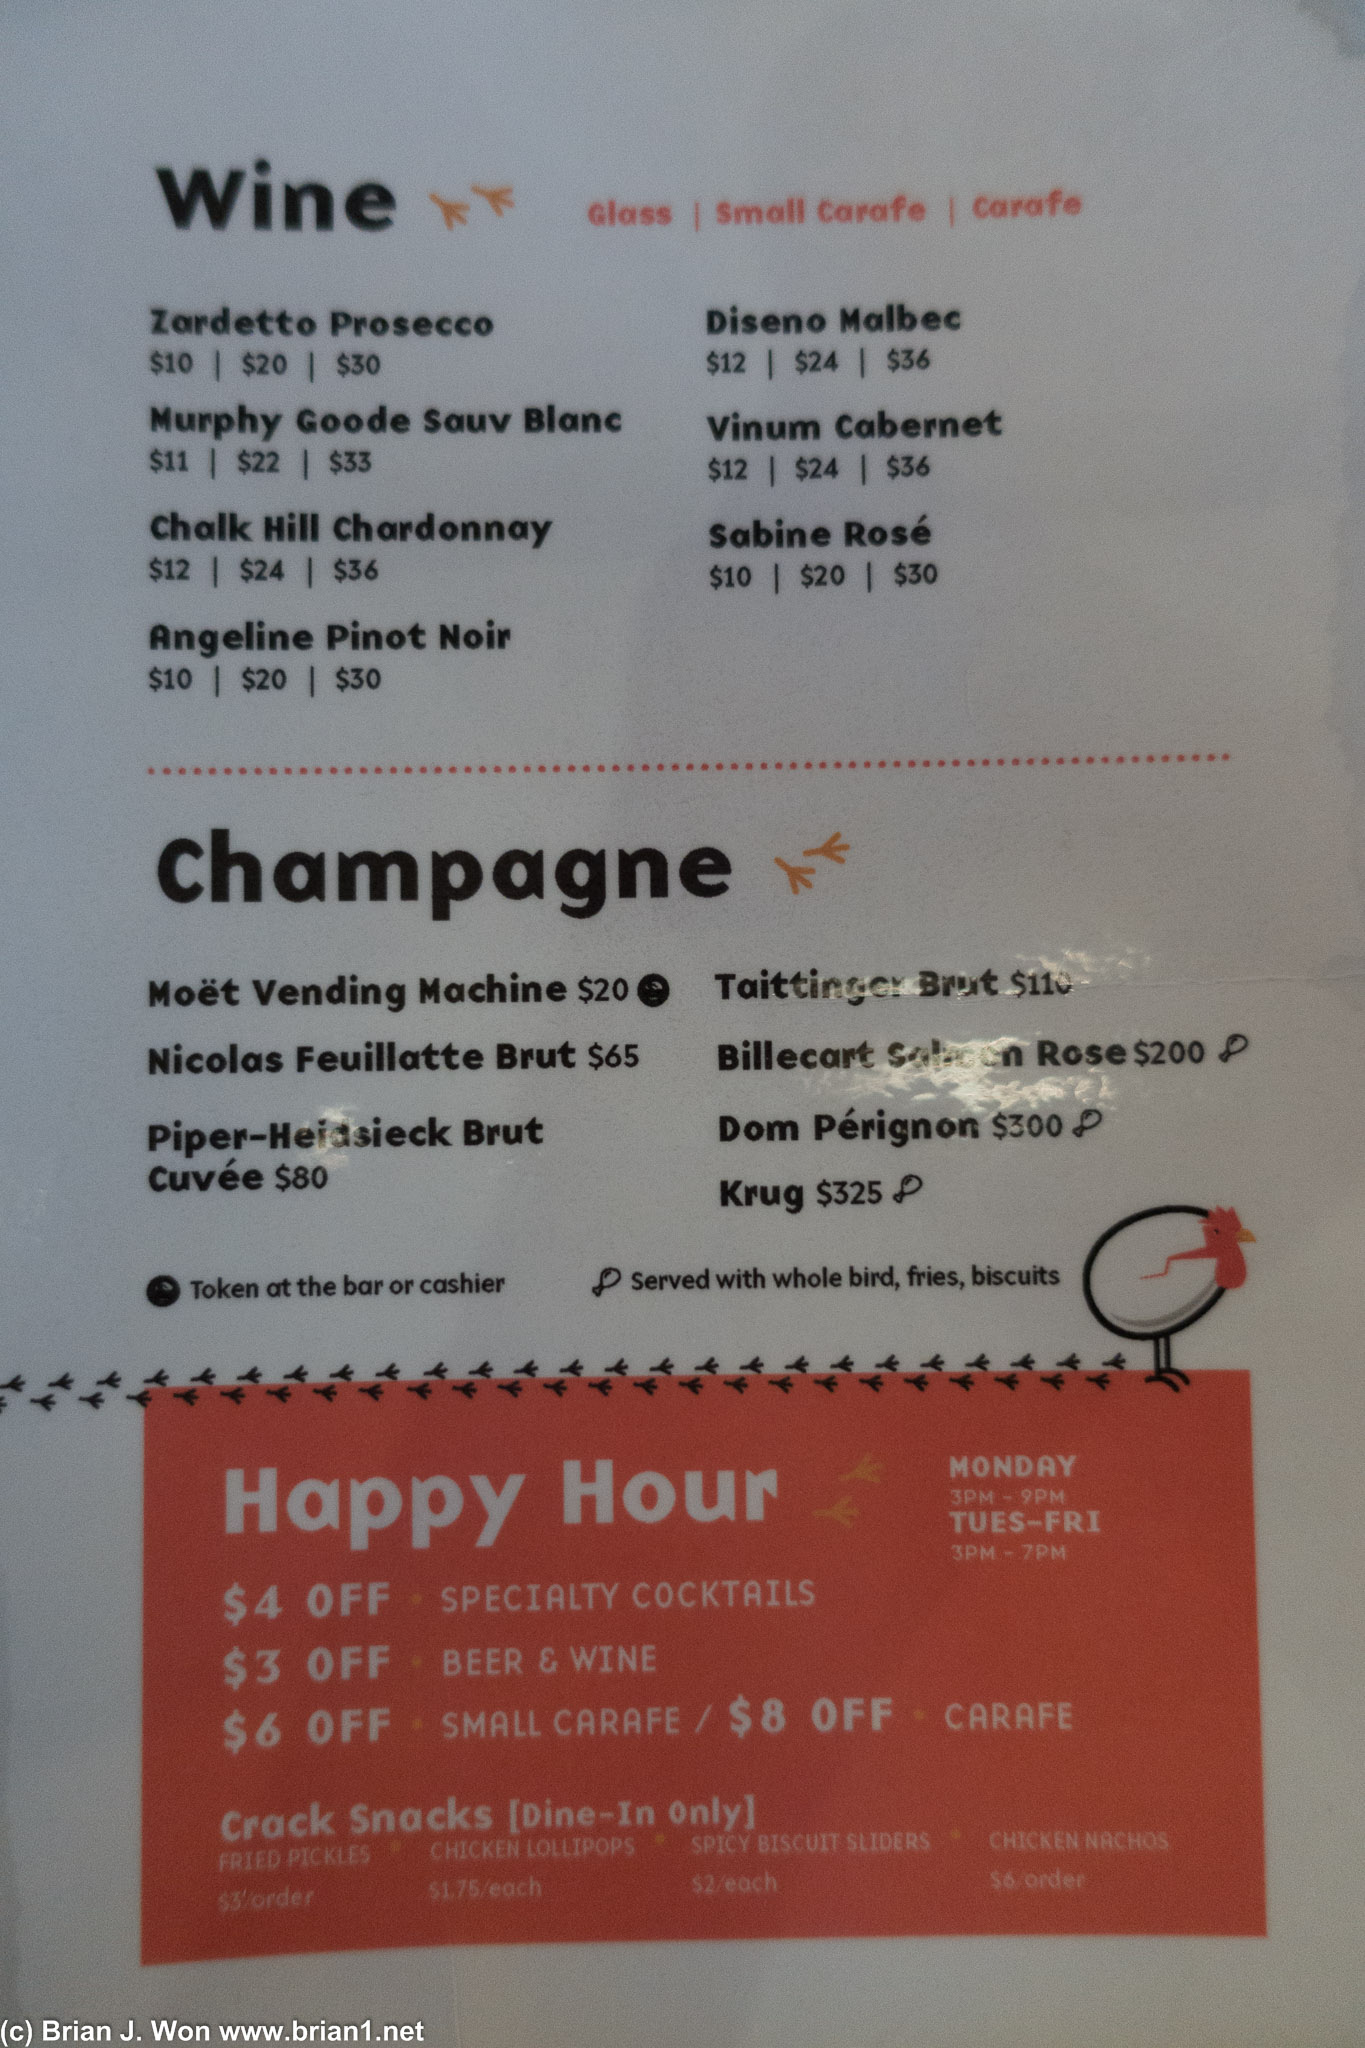 Wine and champagne + happy hour menu.